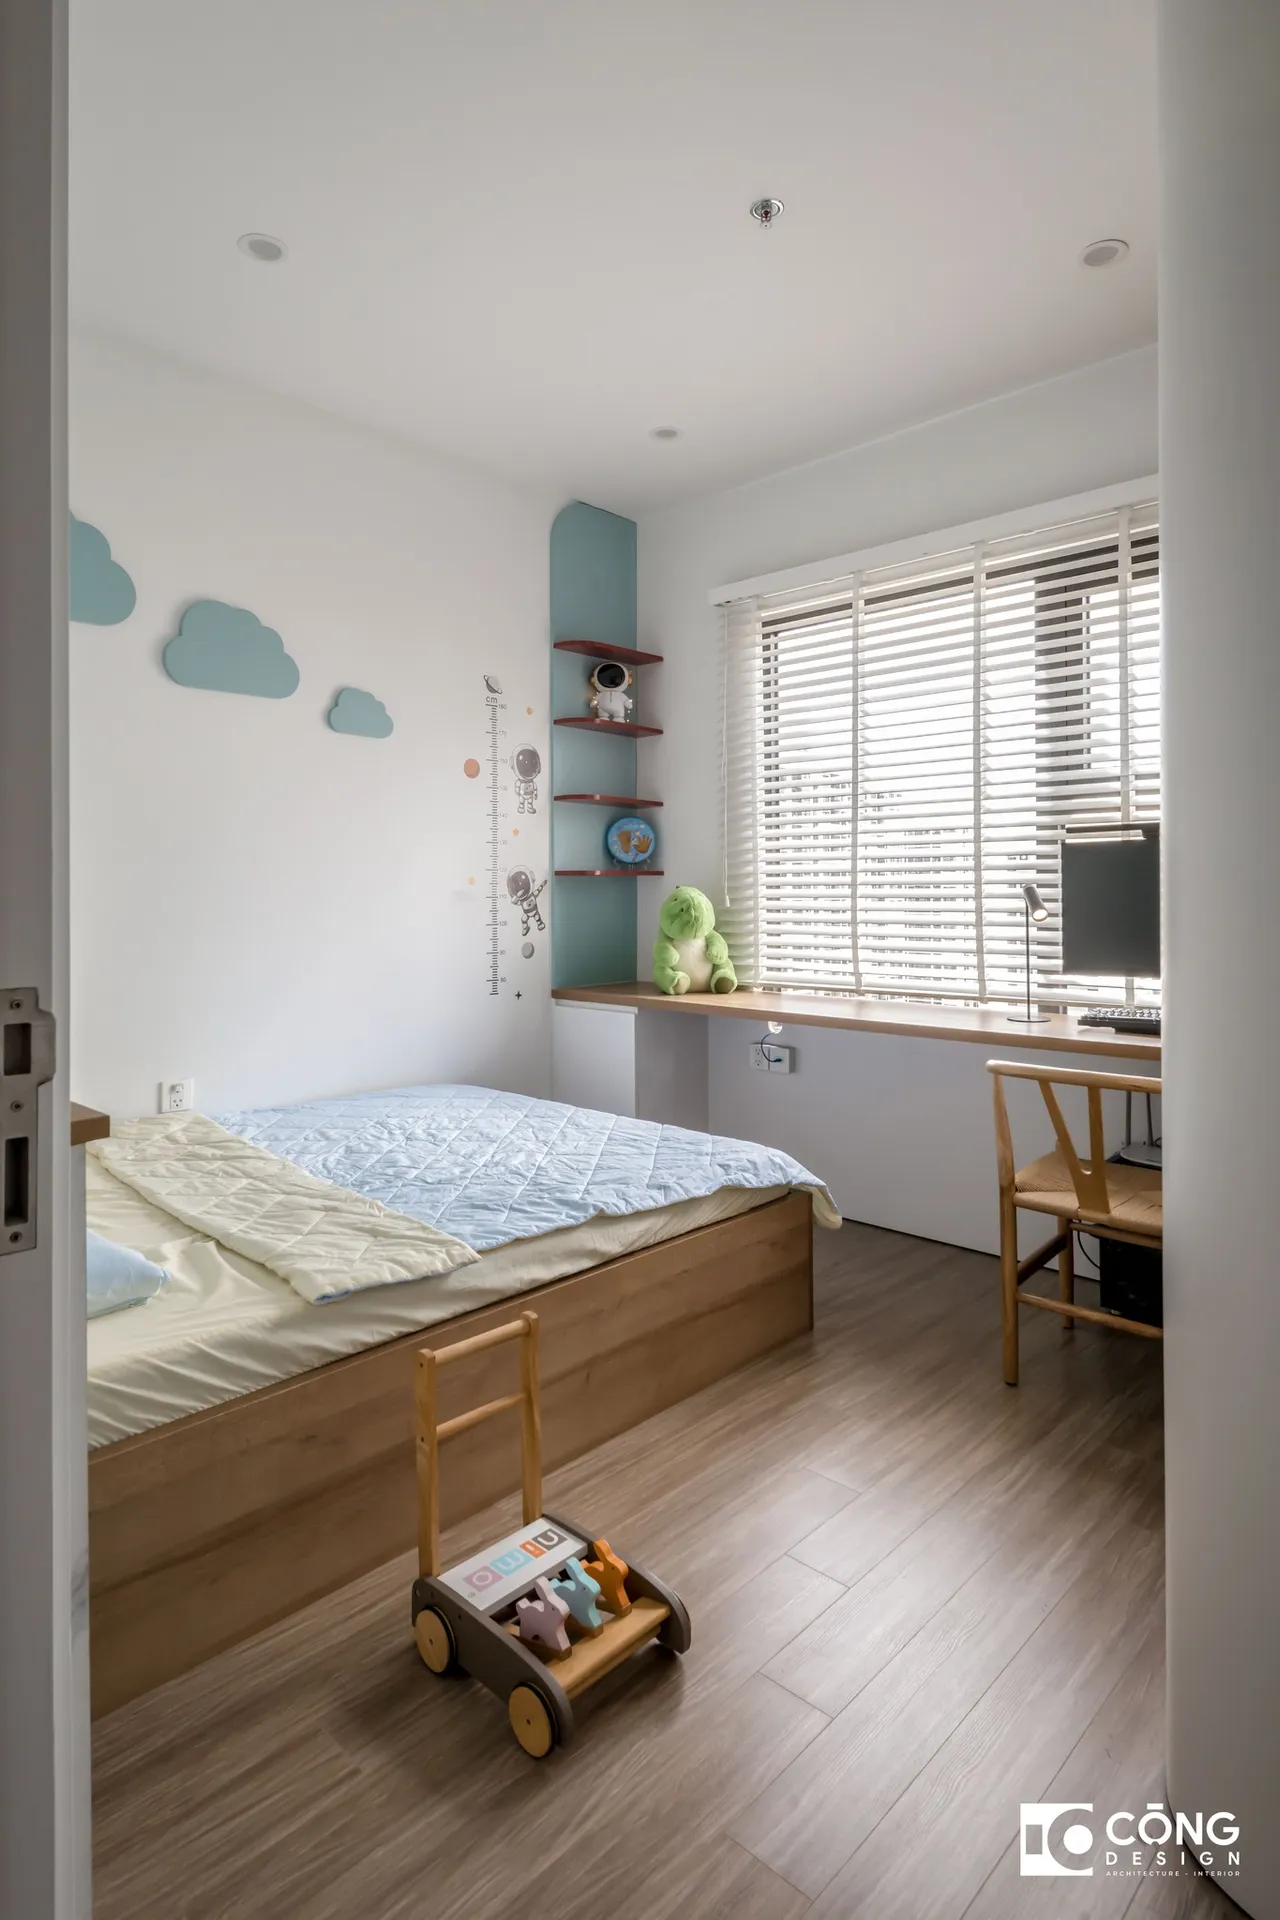 Hoàn thiện nội thất phòng ngủ cho bé Căn hộ S503 Vinhomes Grand Park phong cách Tối giản Minimalist, phong cách Color Block